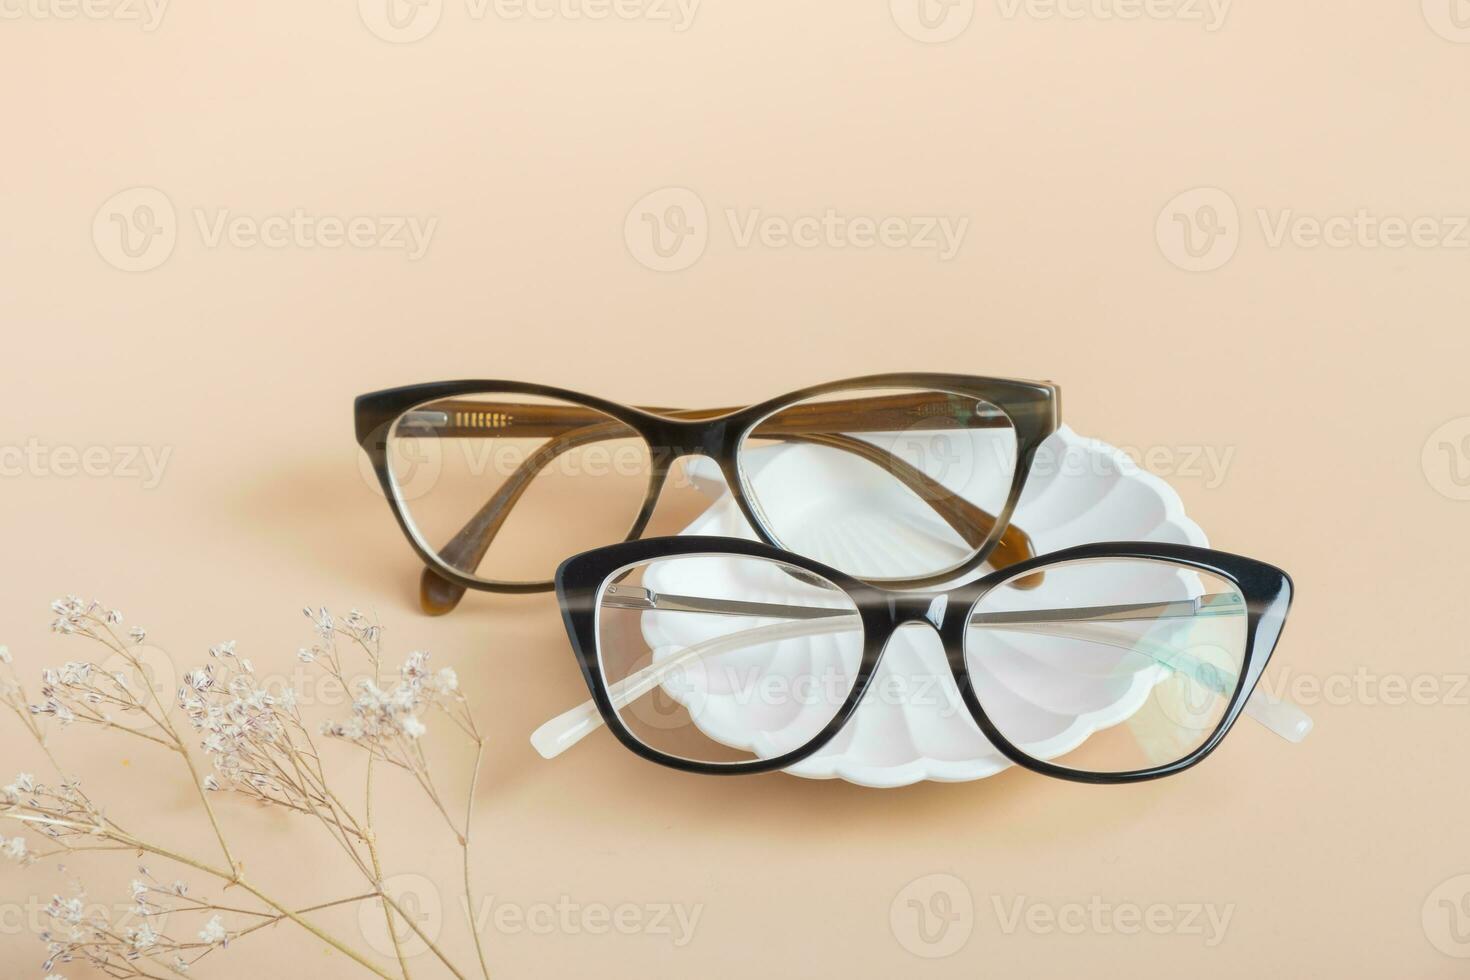 gesso elementos com Óculos em colori fundo. ótico loja, visão teste, à moda óculos conceito foto